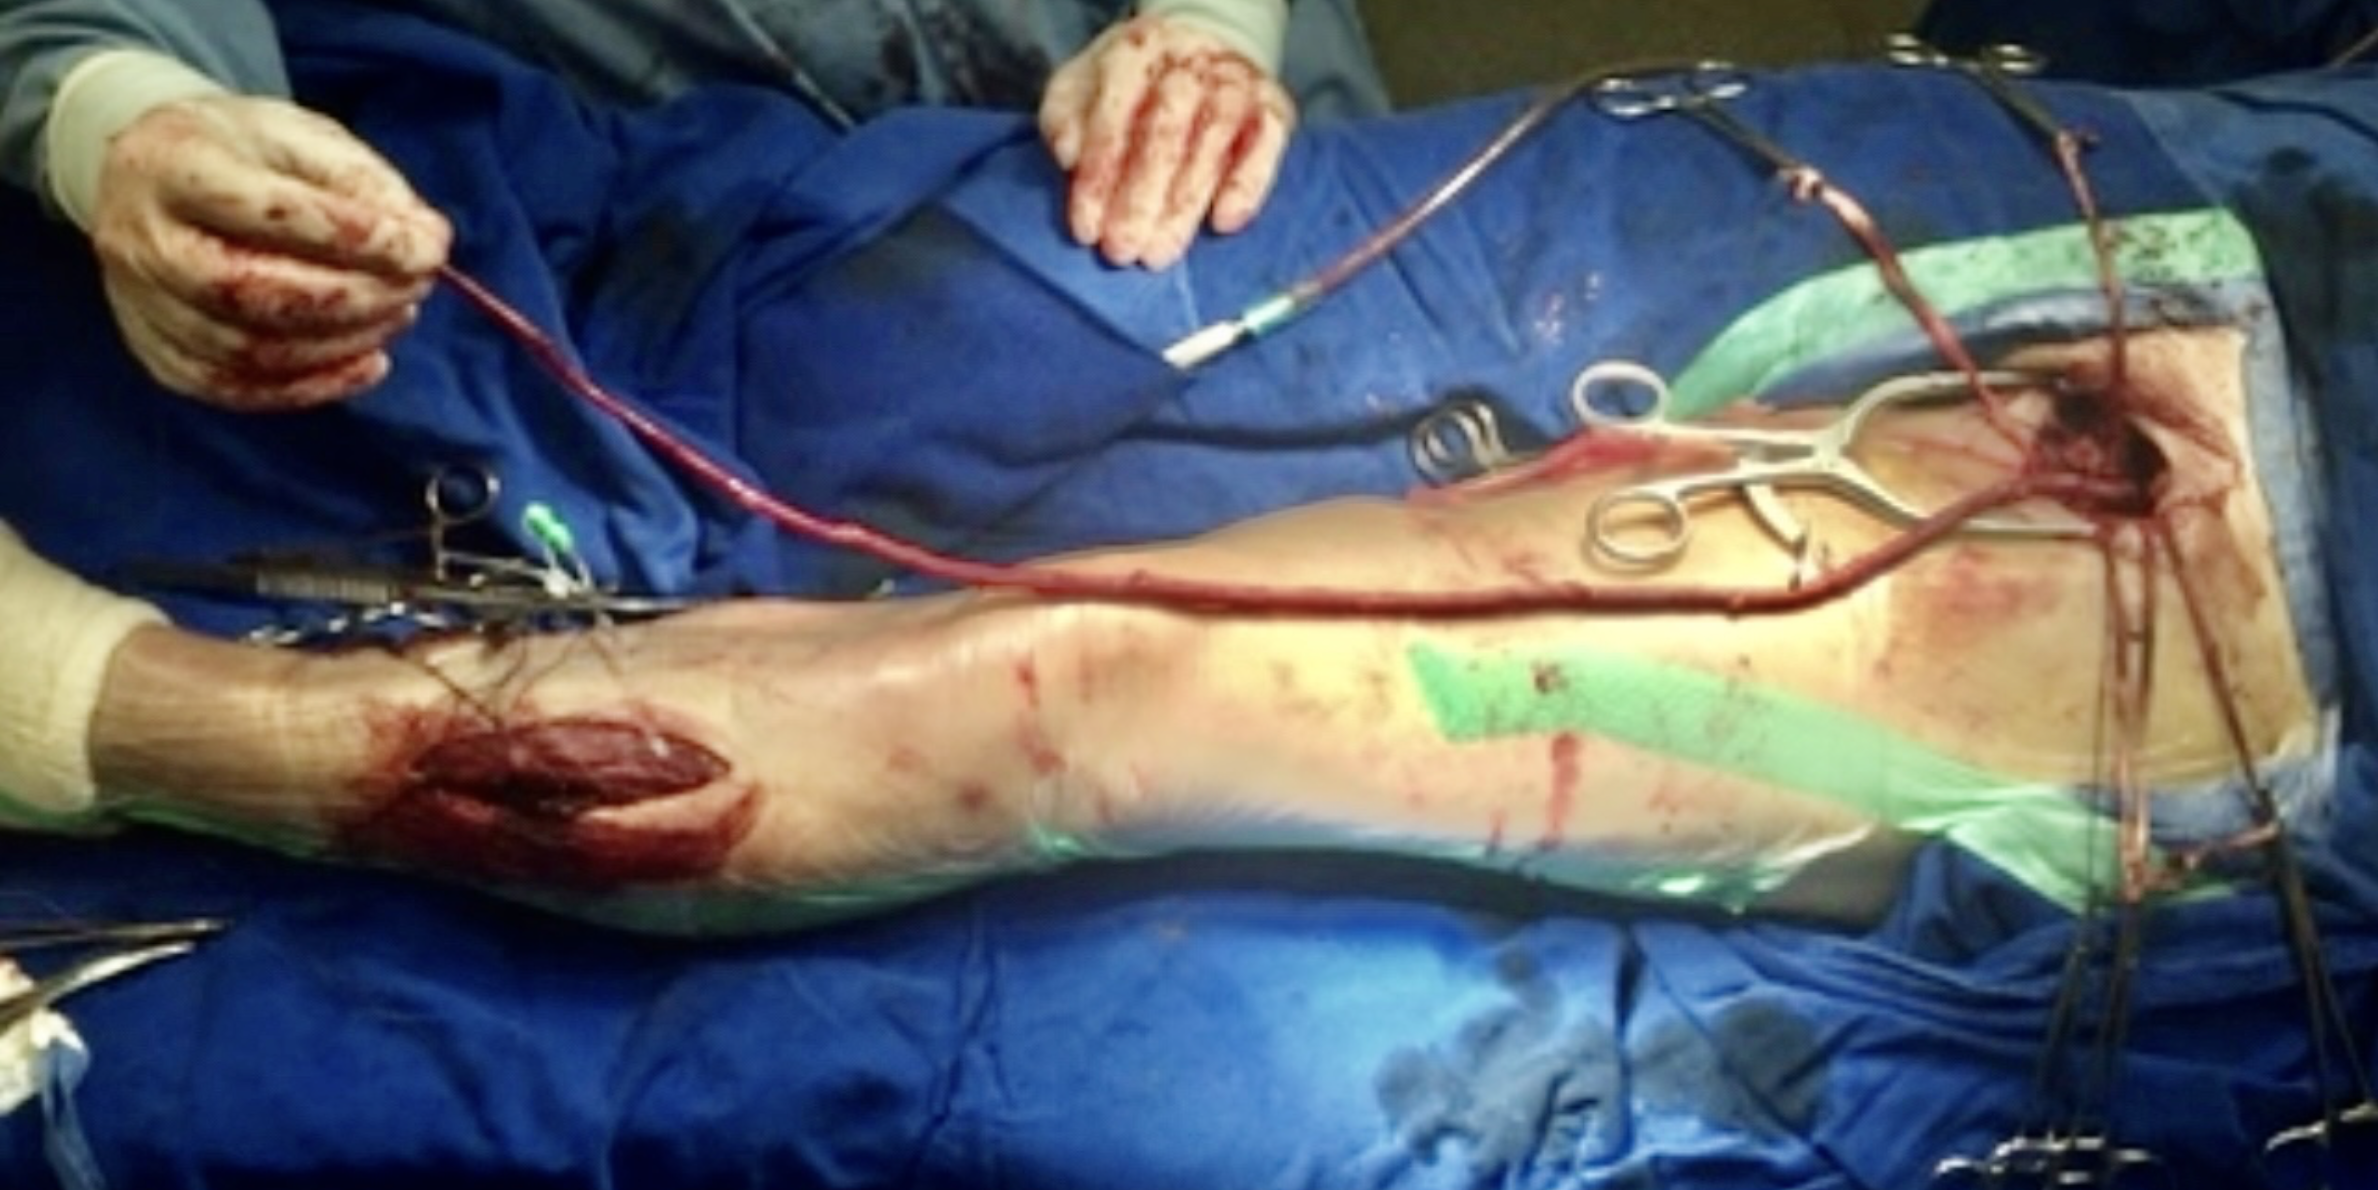 Restauração de fluxo por meio de enxerto com veia em membro inferior de doente com obstrução aguda de artéria de perna